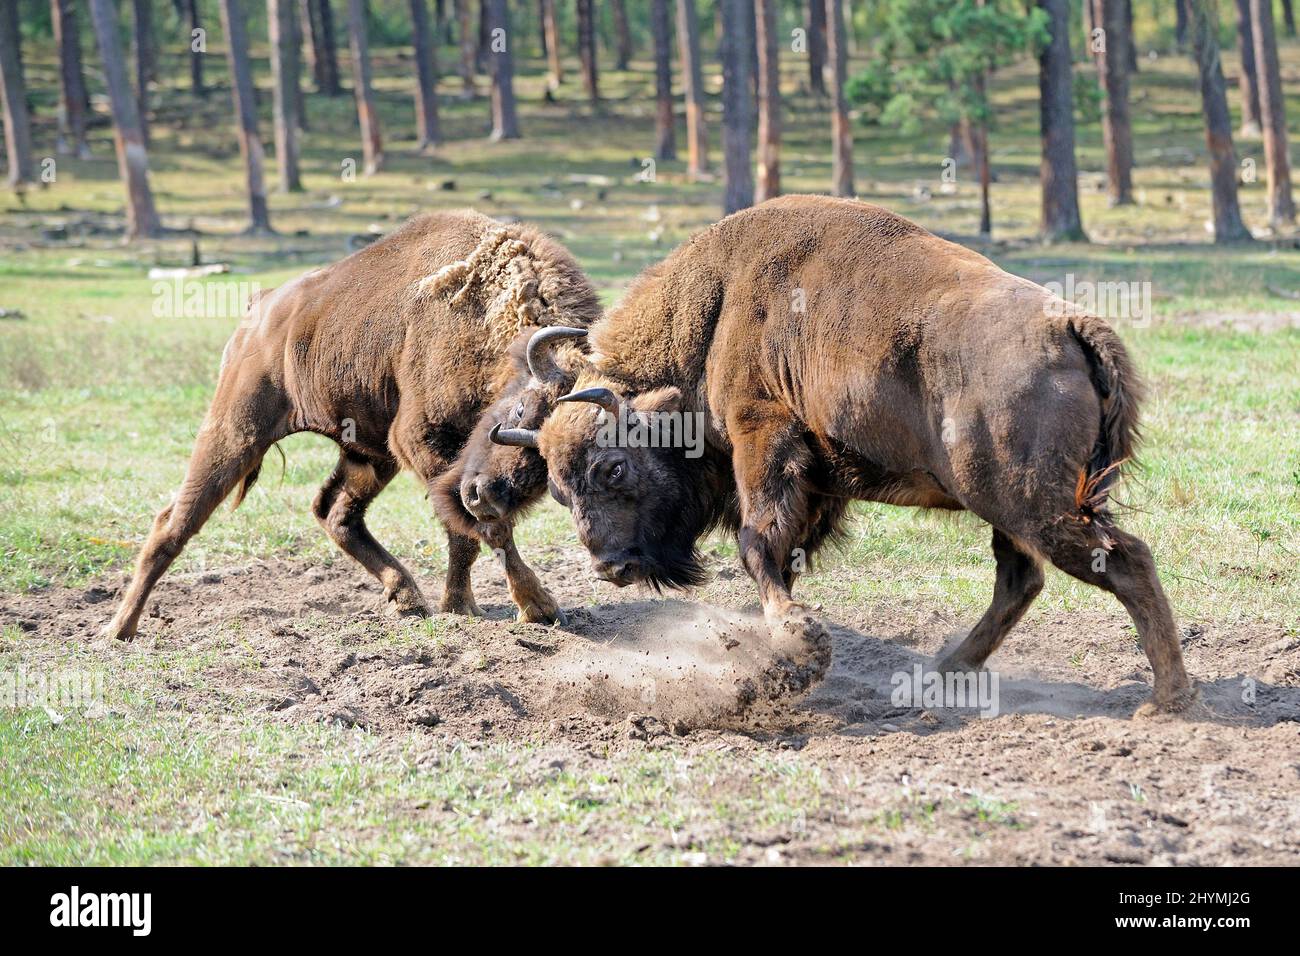 Bisonte europeo, wisent (Bison bonasus), dos bisontes europeos luchando, Alemania Foto de stock